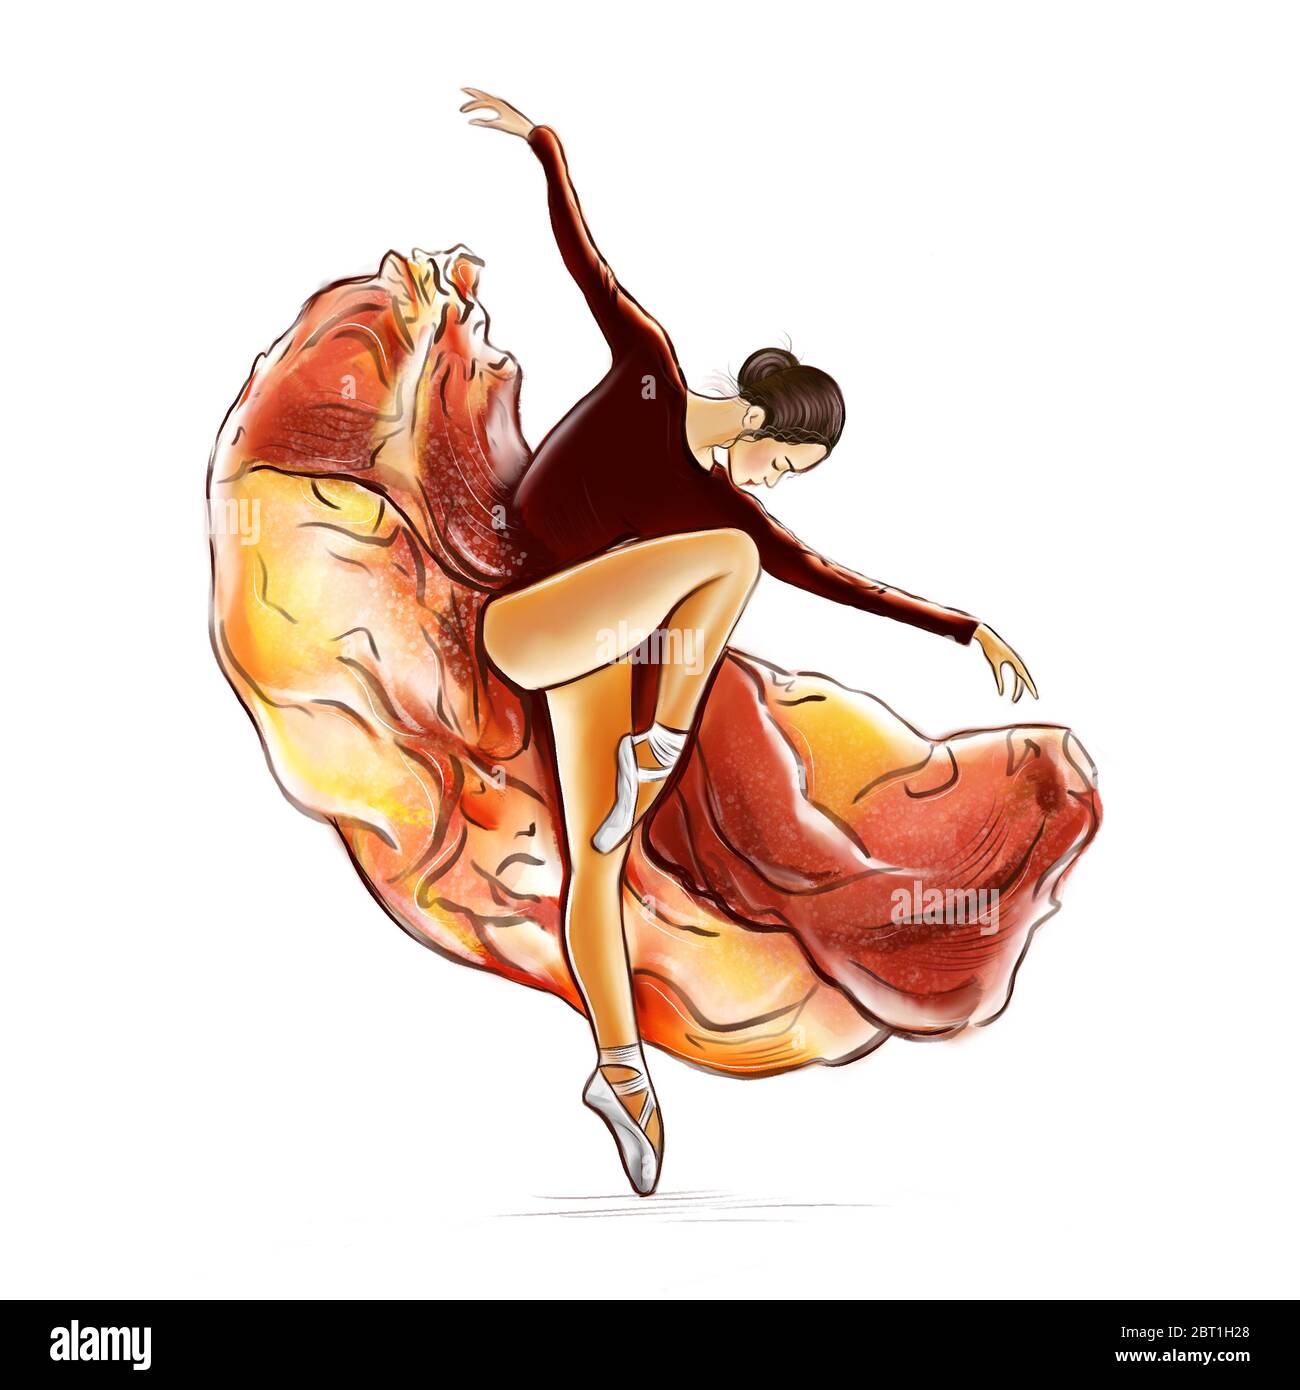 Illustration d'une esquisse de couleur dans un style aquarelle d'un danseur dans une robe noir-orange en mouvement sur un fond blanc isolé. Banque D'Images